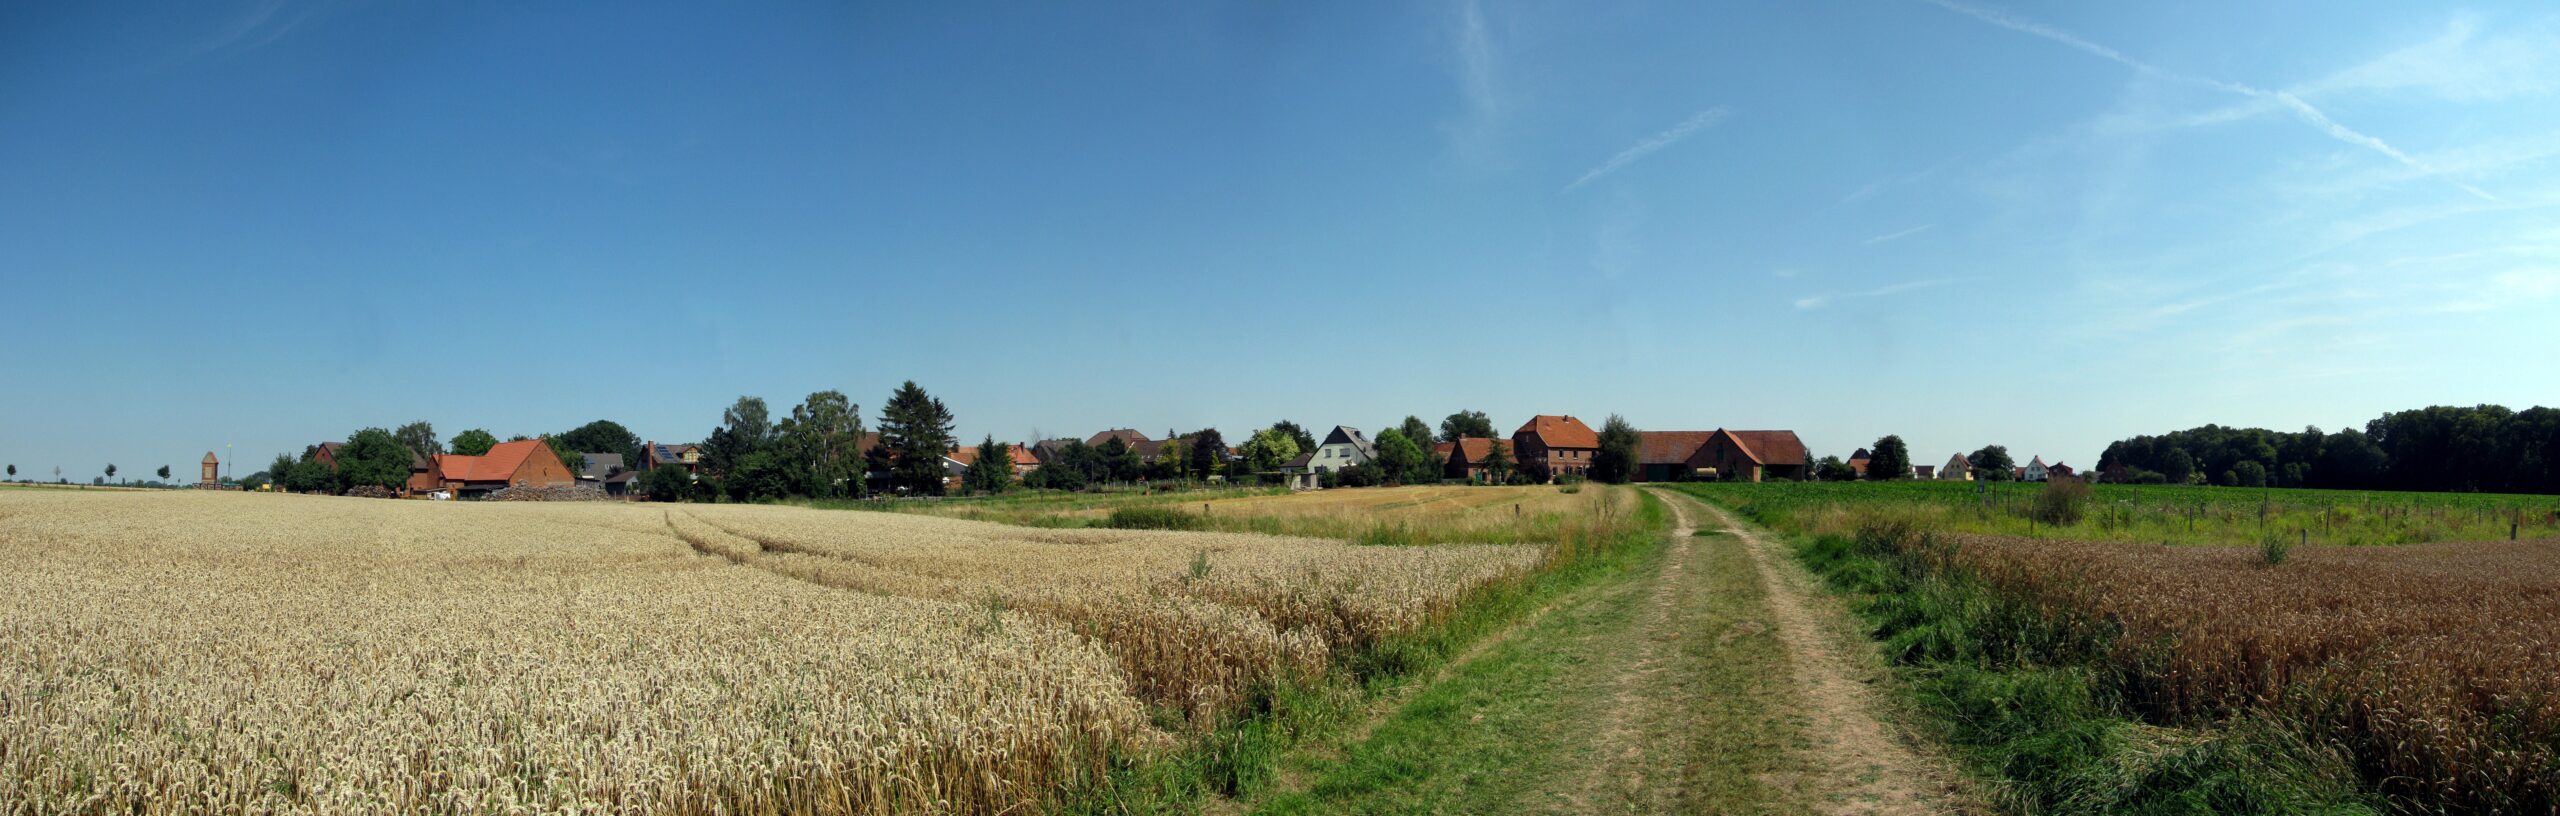 2006 - Blick aufs Dorf aus südwestlicher Richtung